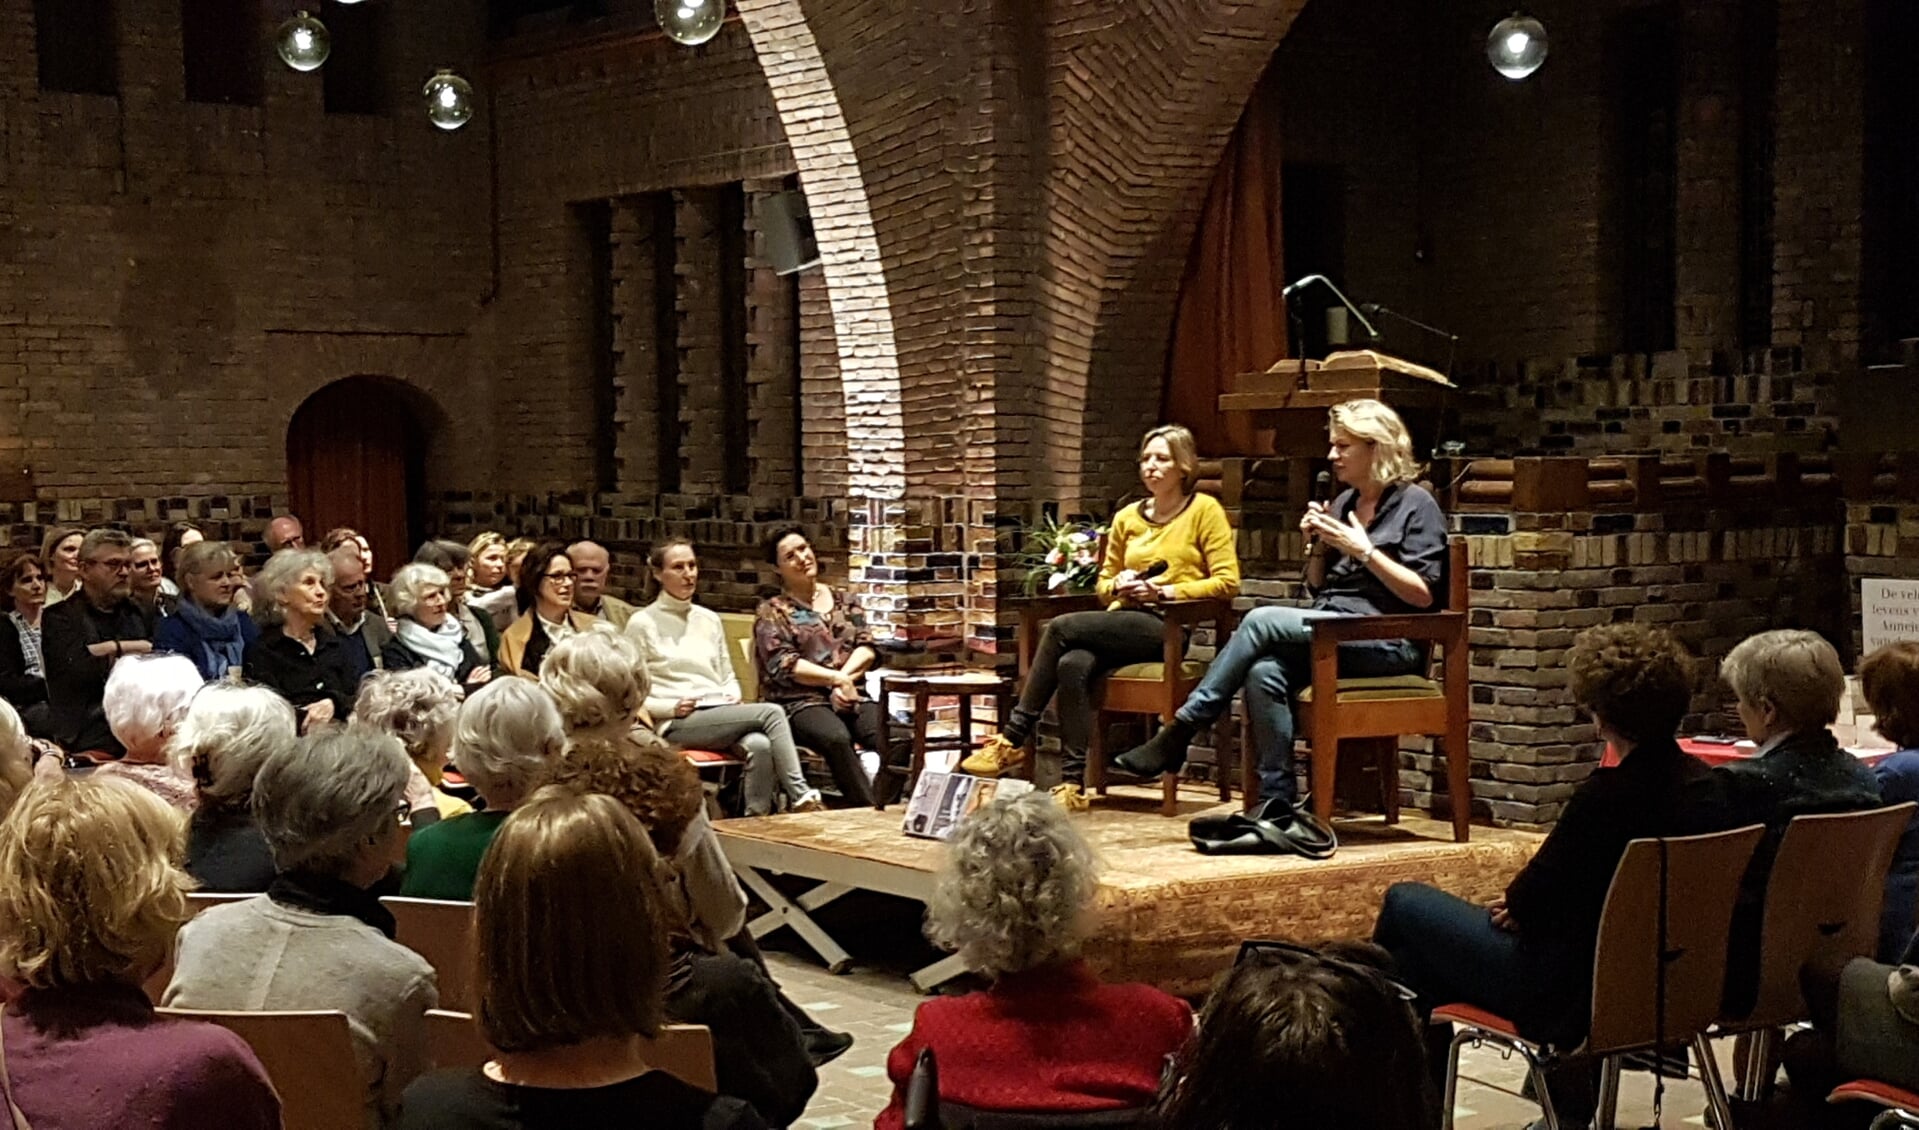 Schrijfster Annejet van der Zijl in gesprek met neerlandica Bea Rigter, in de Woudkapel.